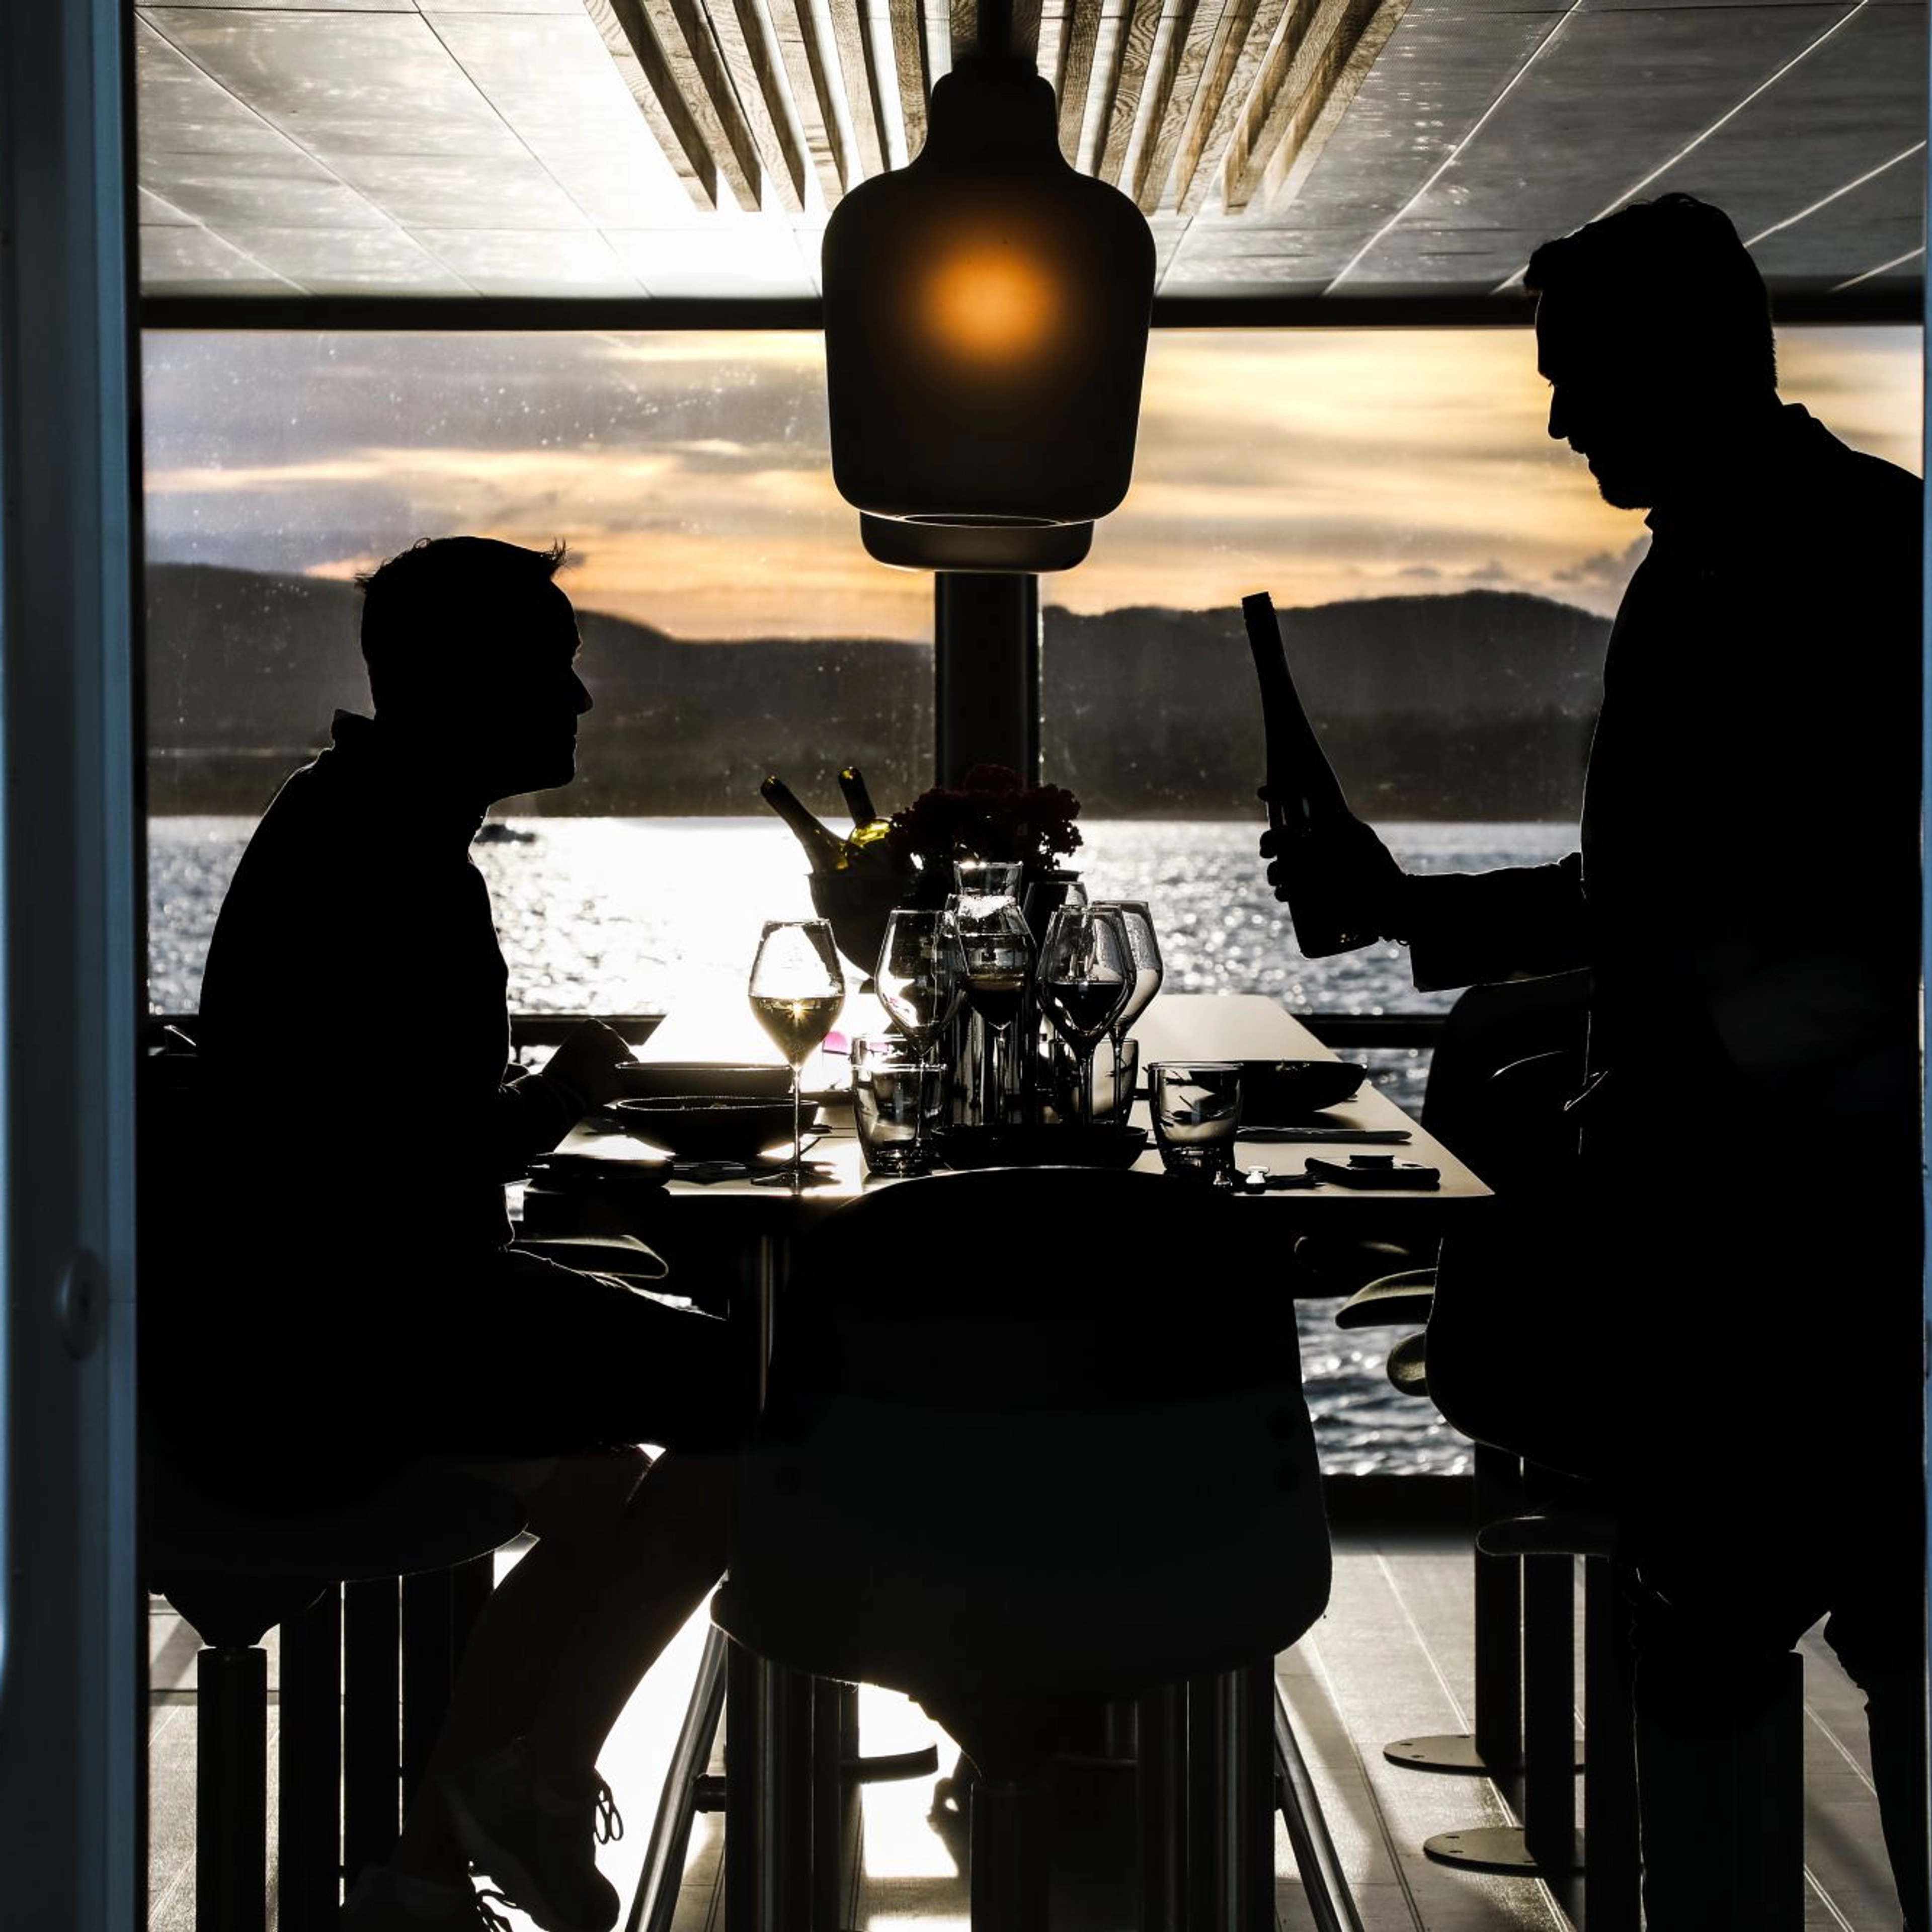 Middagscruise på Oslofjorden med en stillegående hybridbåt - nyter et deilig måltid ombord - tur fra Oslo